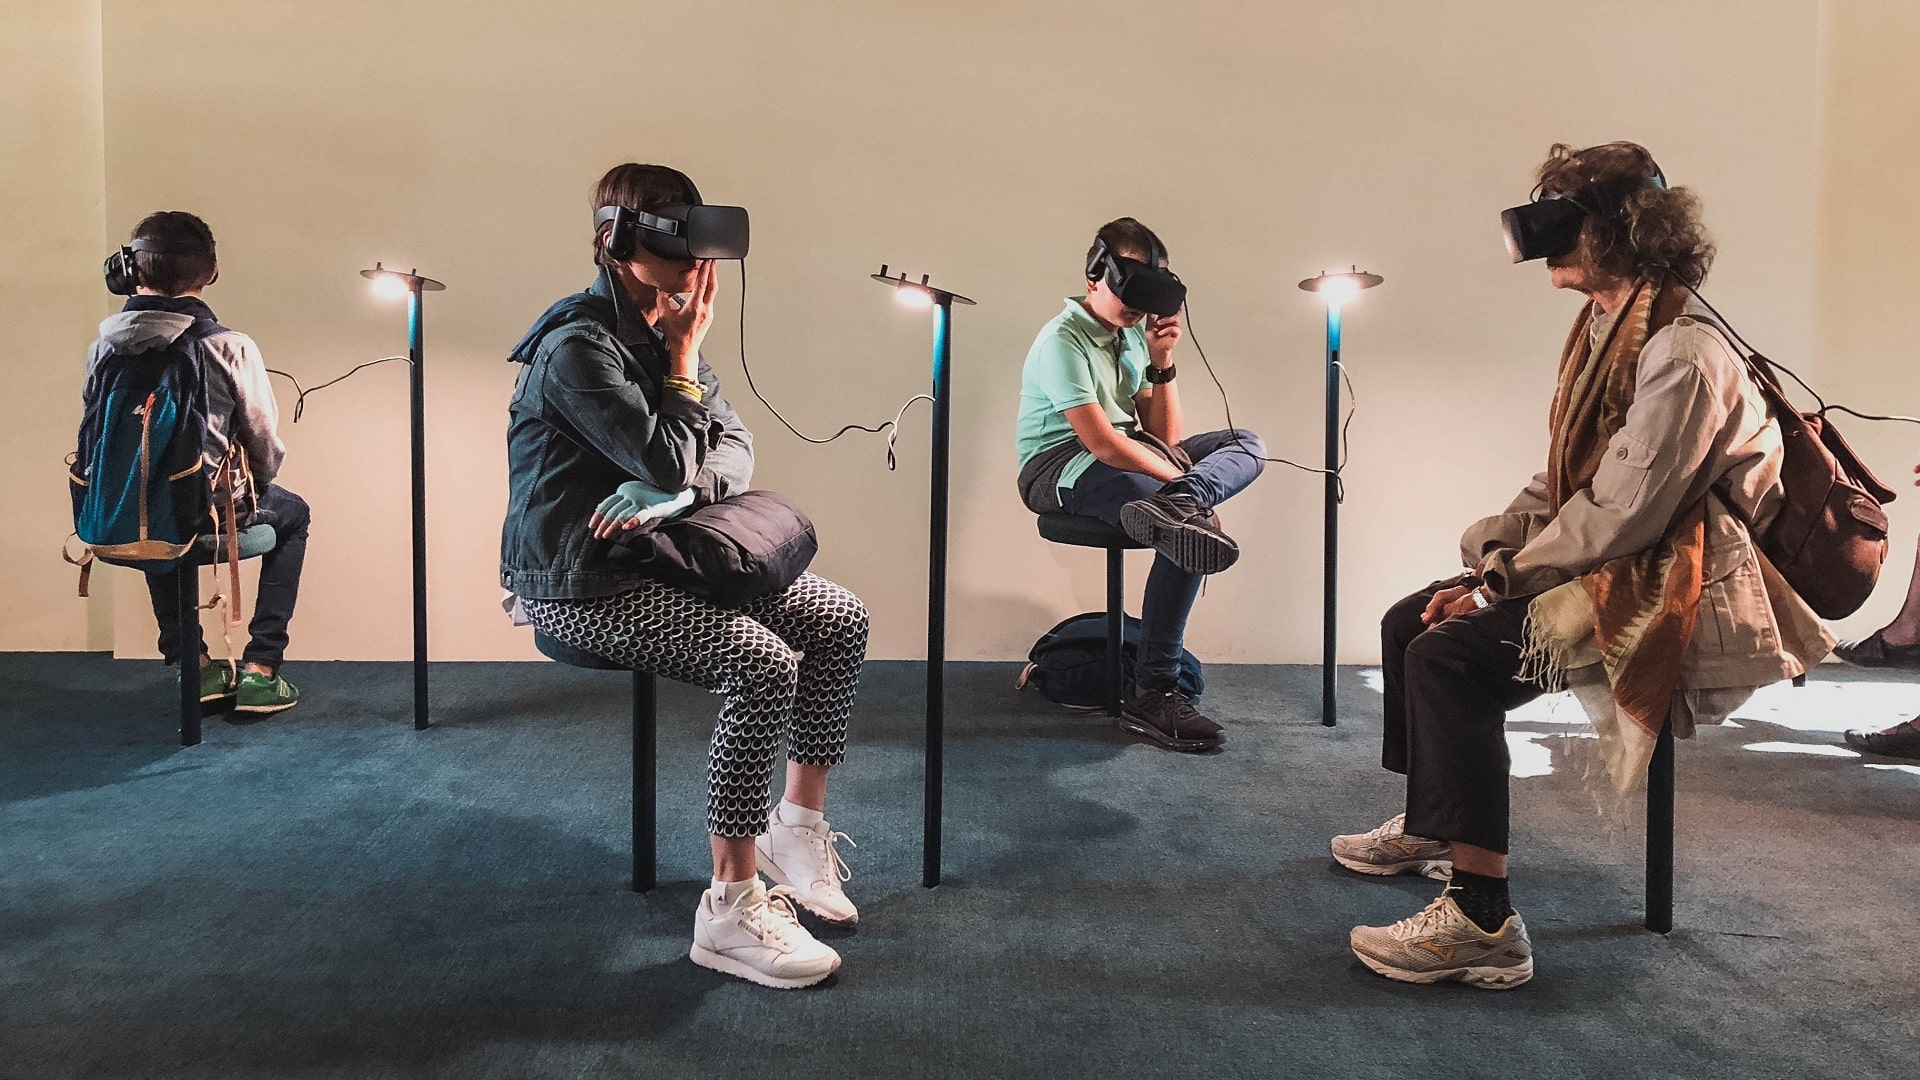 Berufe der Zukunft entdecken - mit Virtual Reality ist das heute möglich.